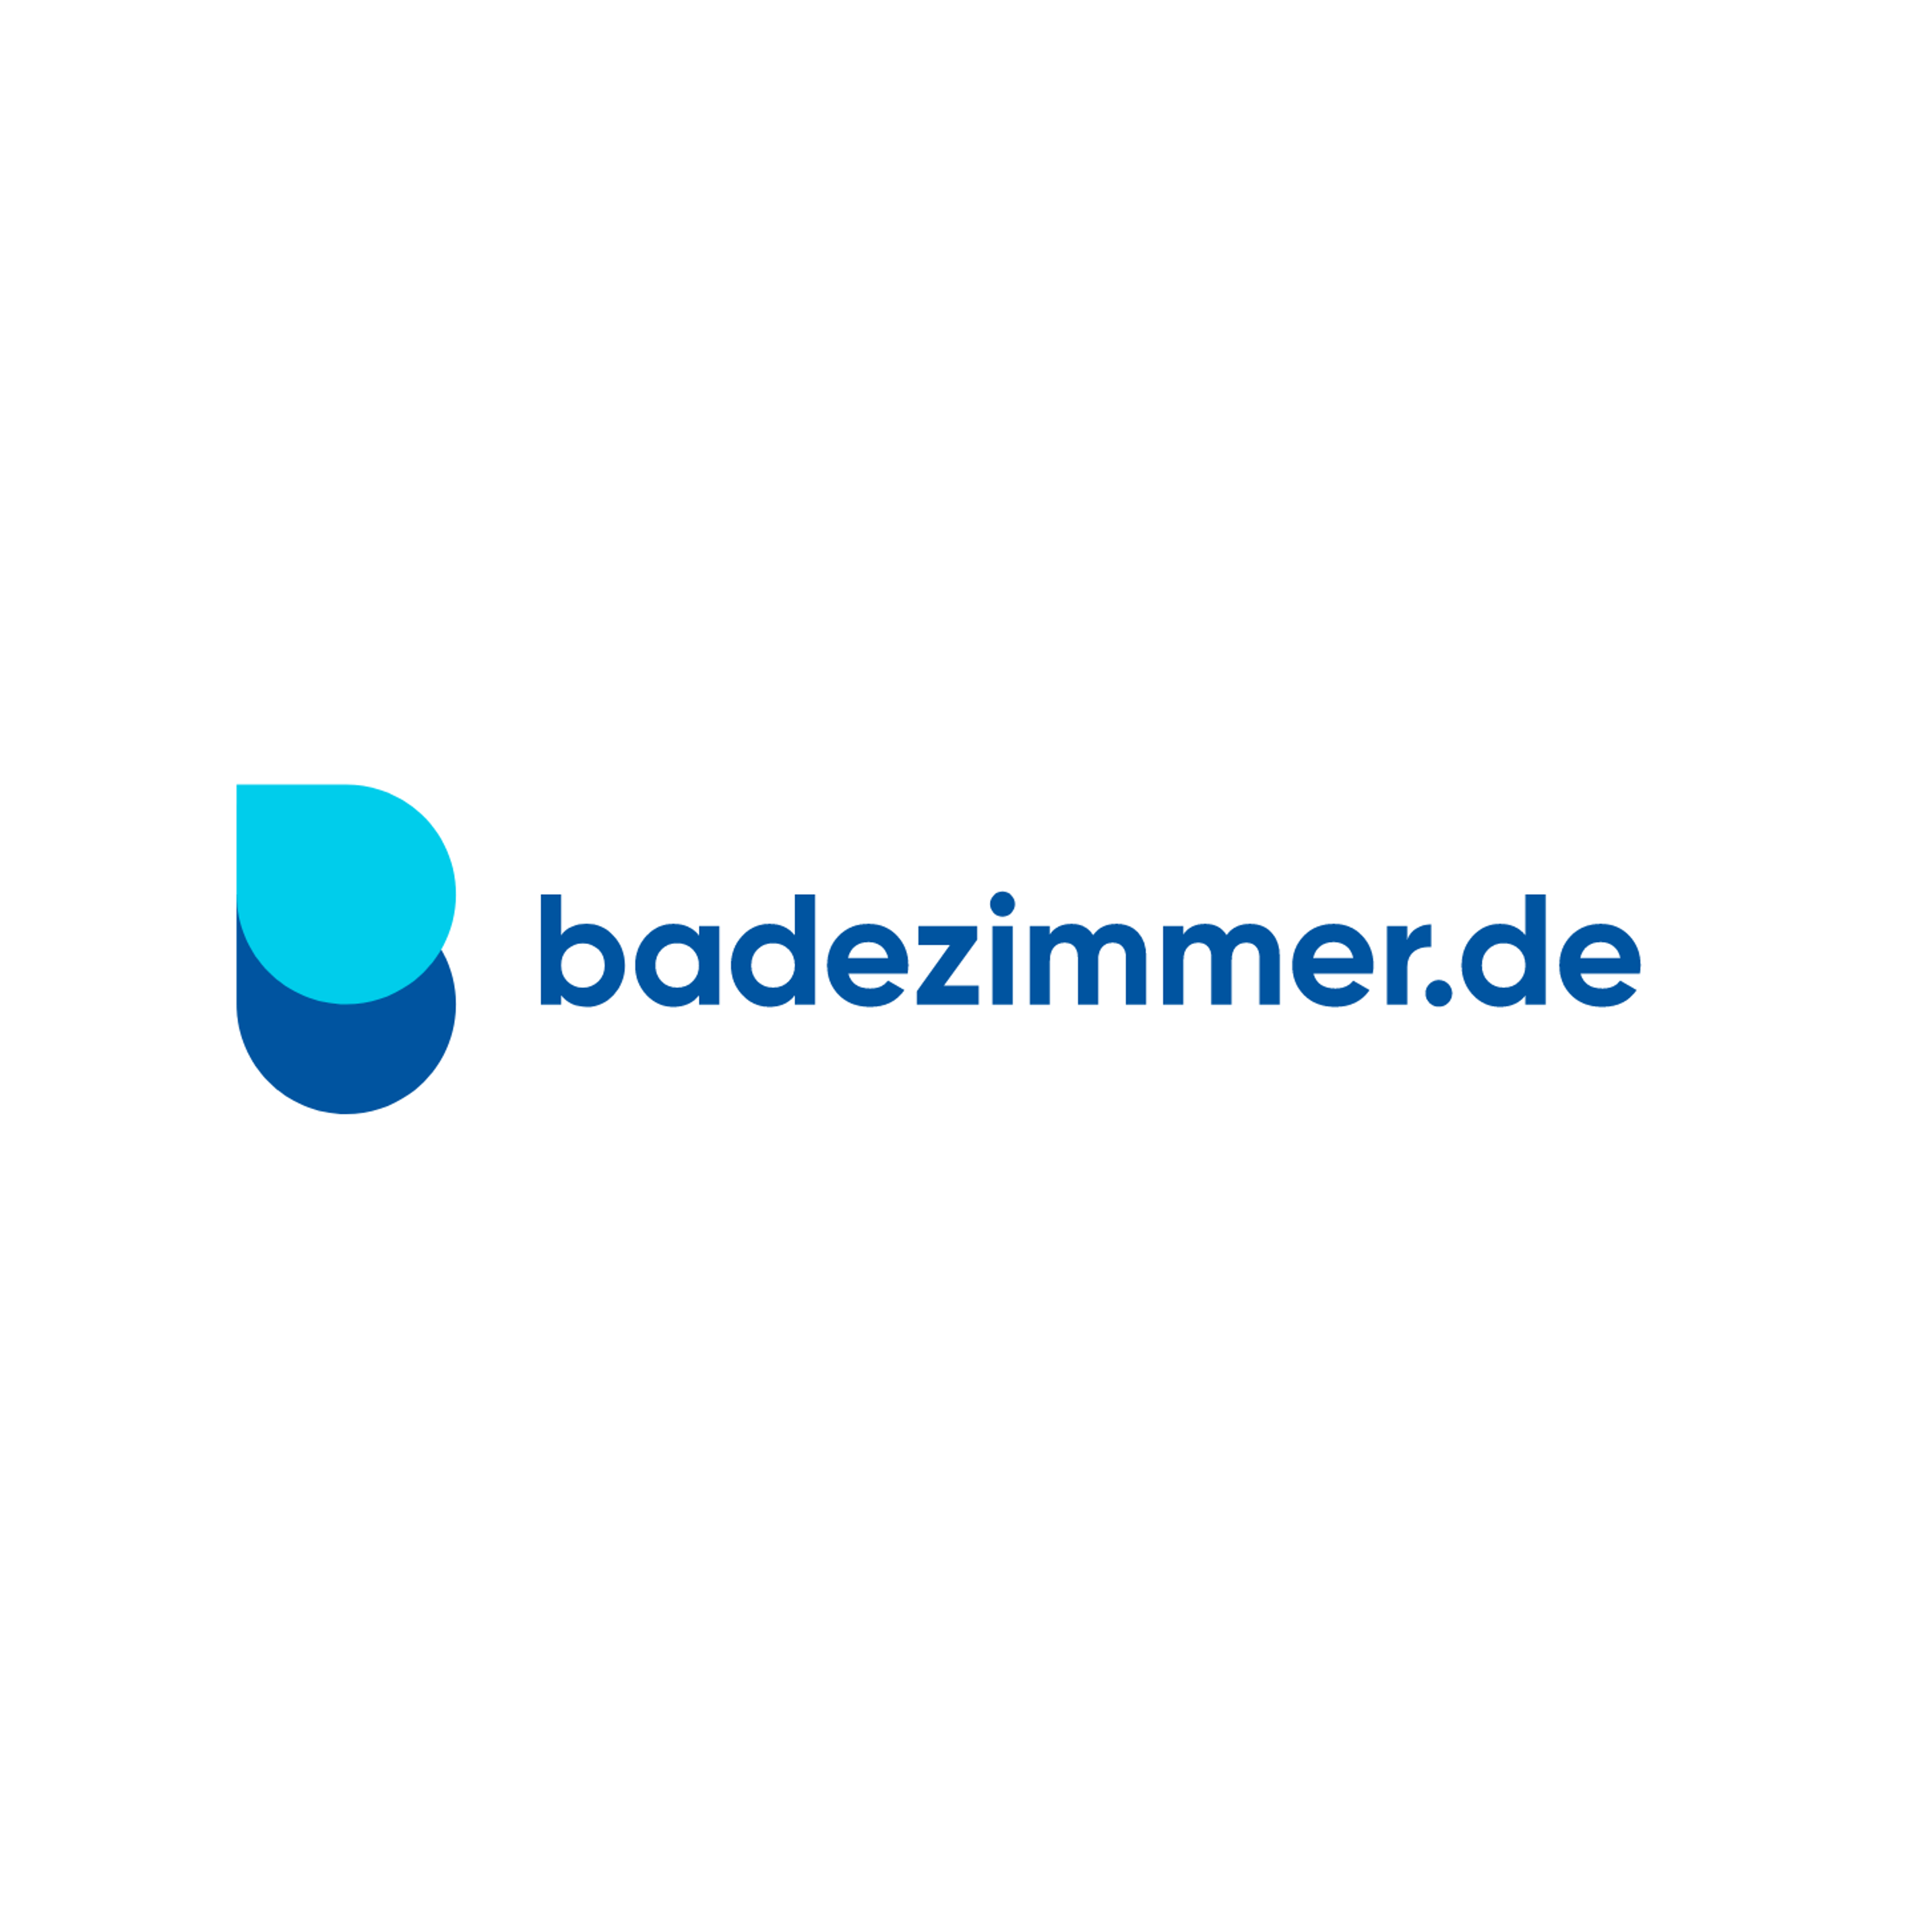 badezimmer.de Badausstellung Krefeld - Zimmer & Kellermann in Krefeld - Logo